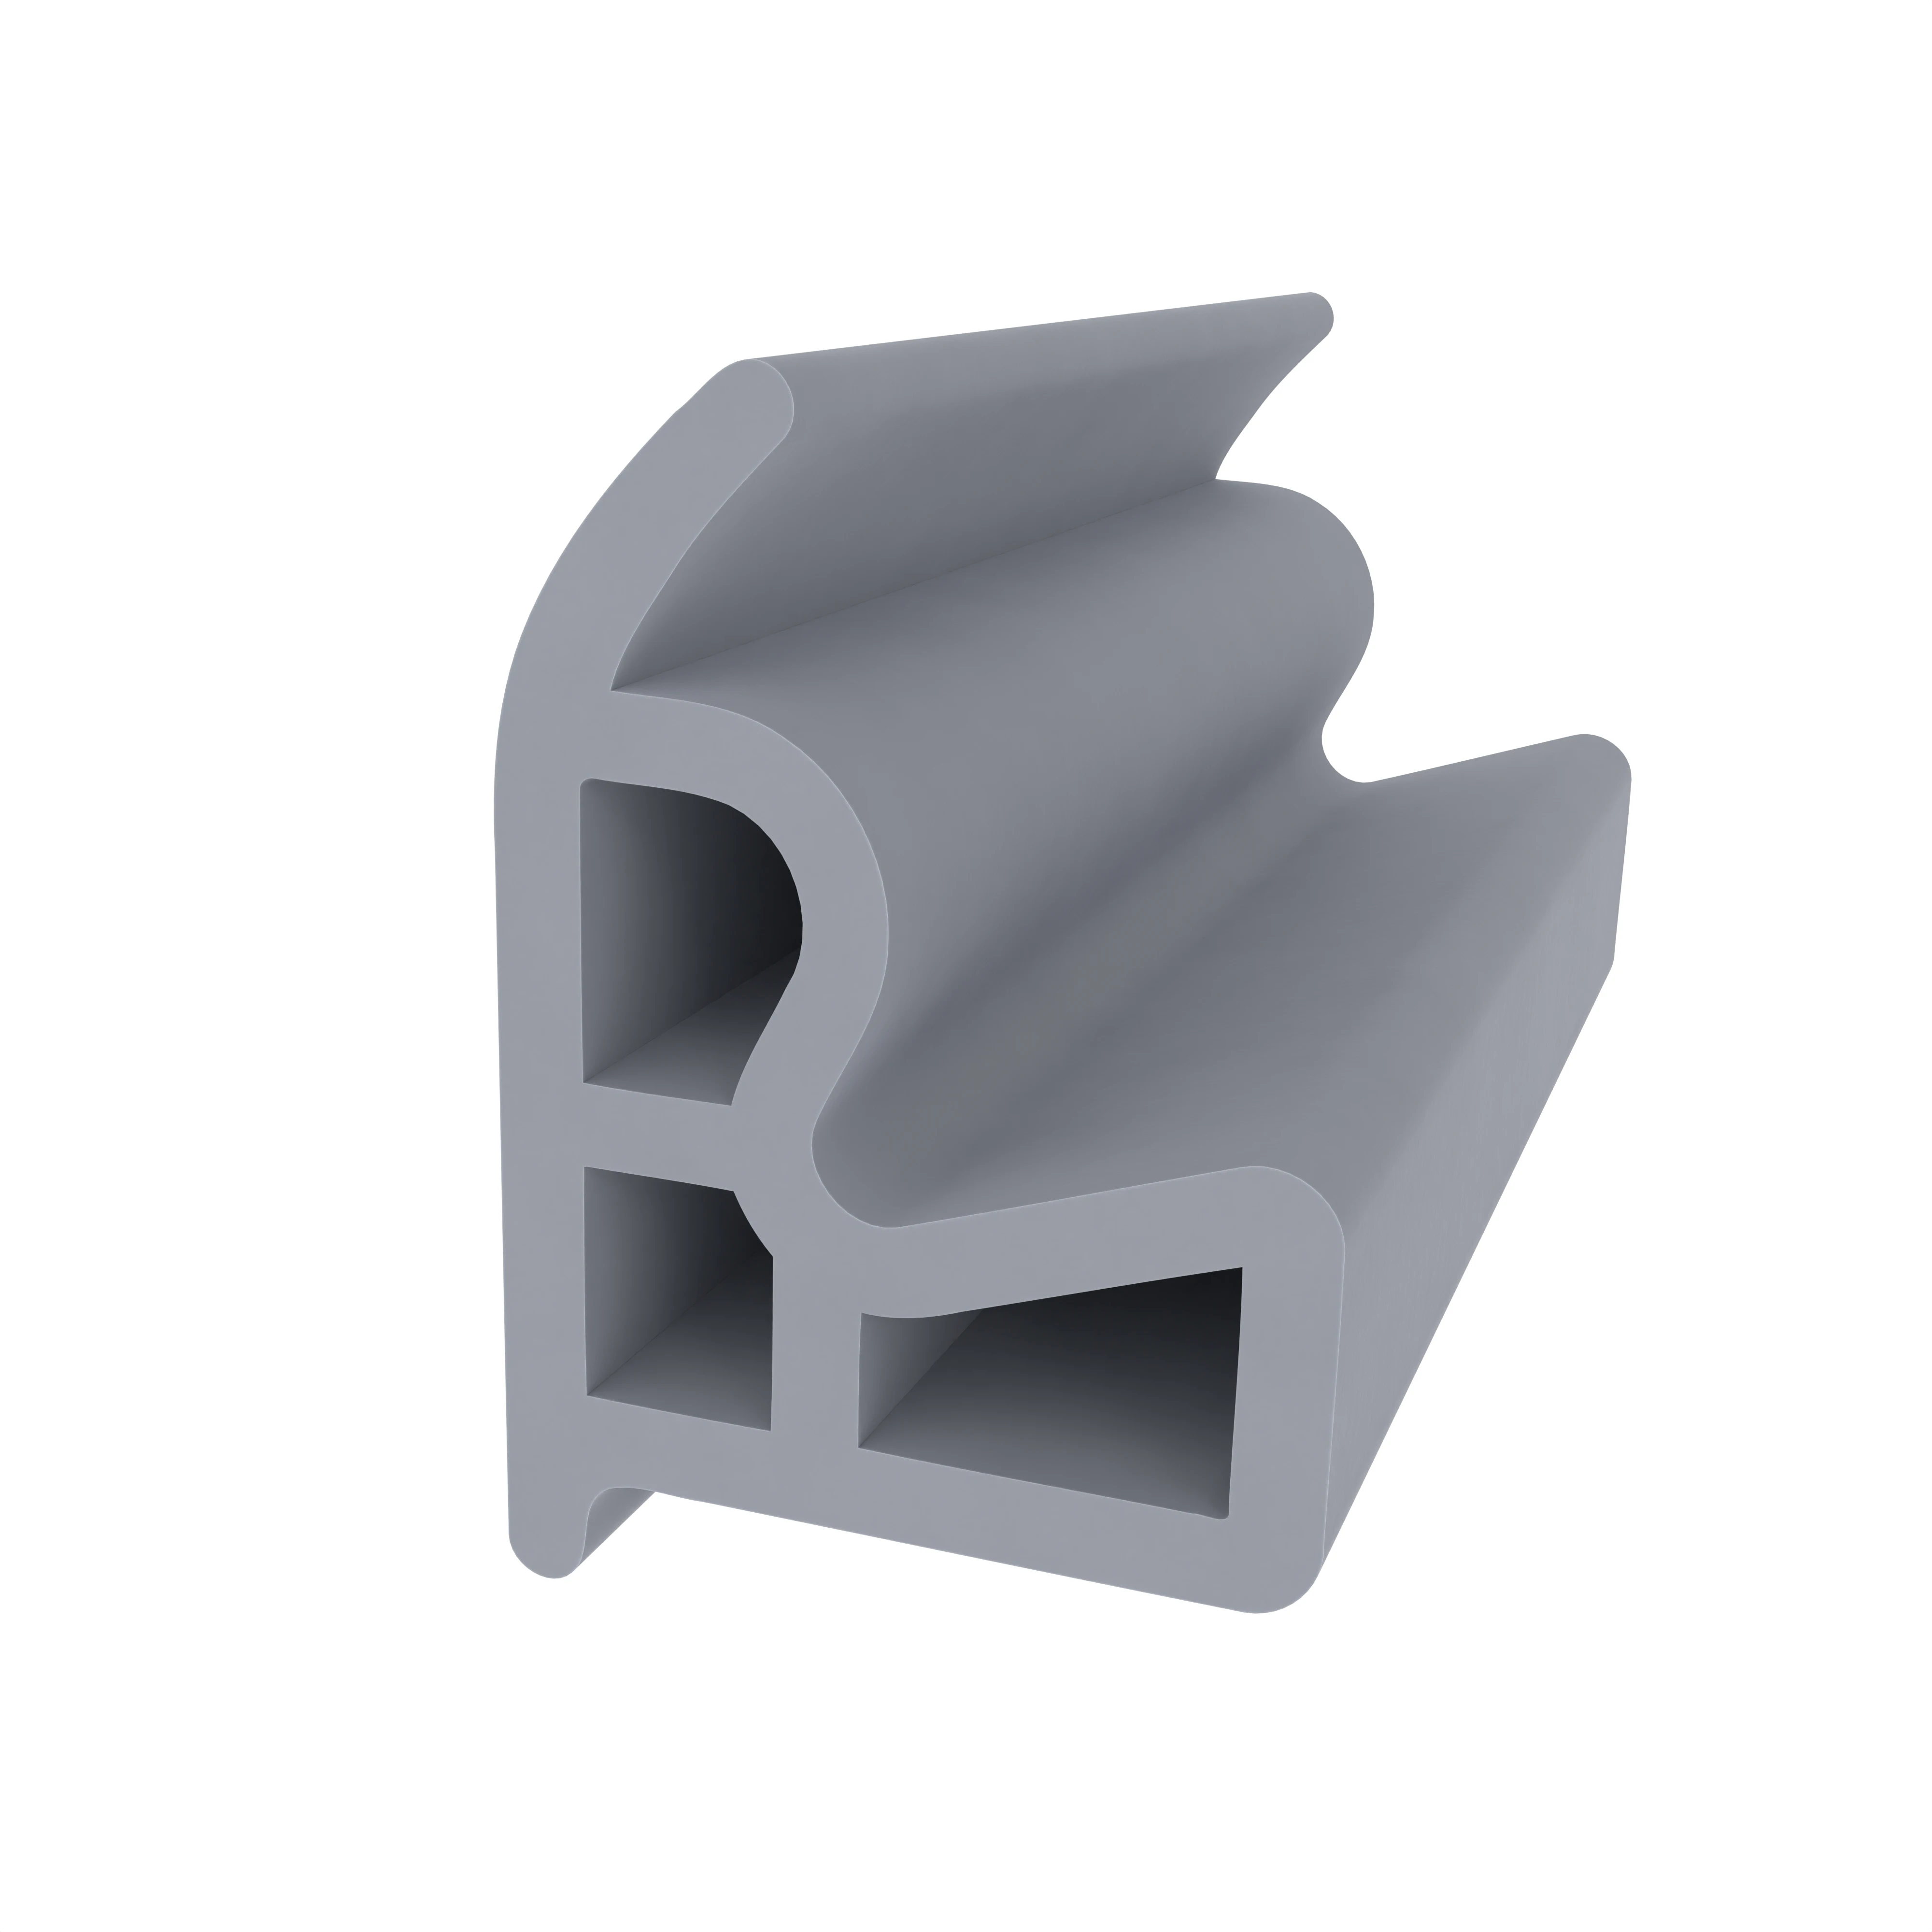 Stahlzargendichtung für Stahlrahmen | 21 mm Höhe | Farbe: grau